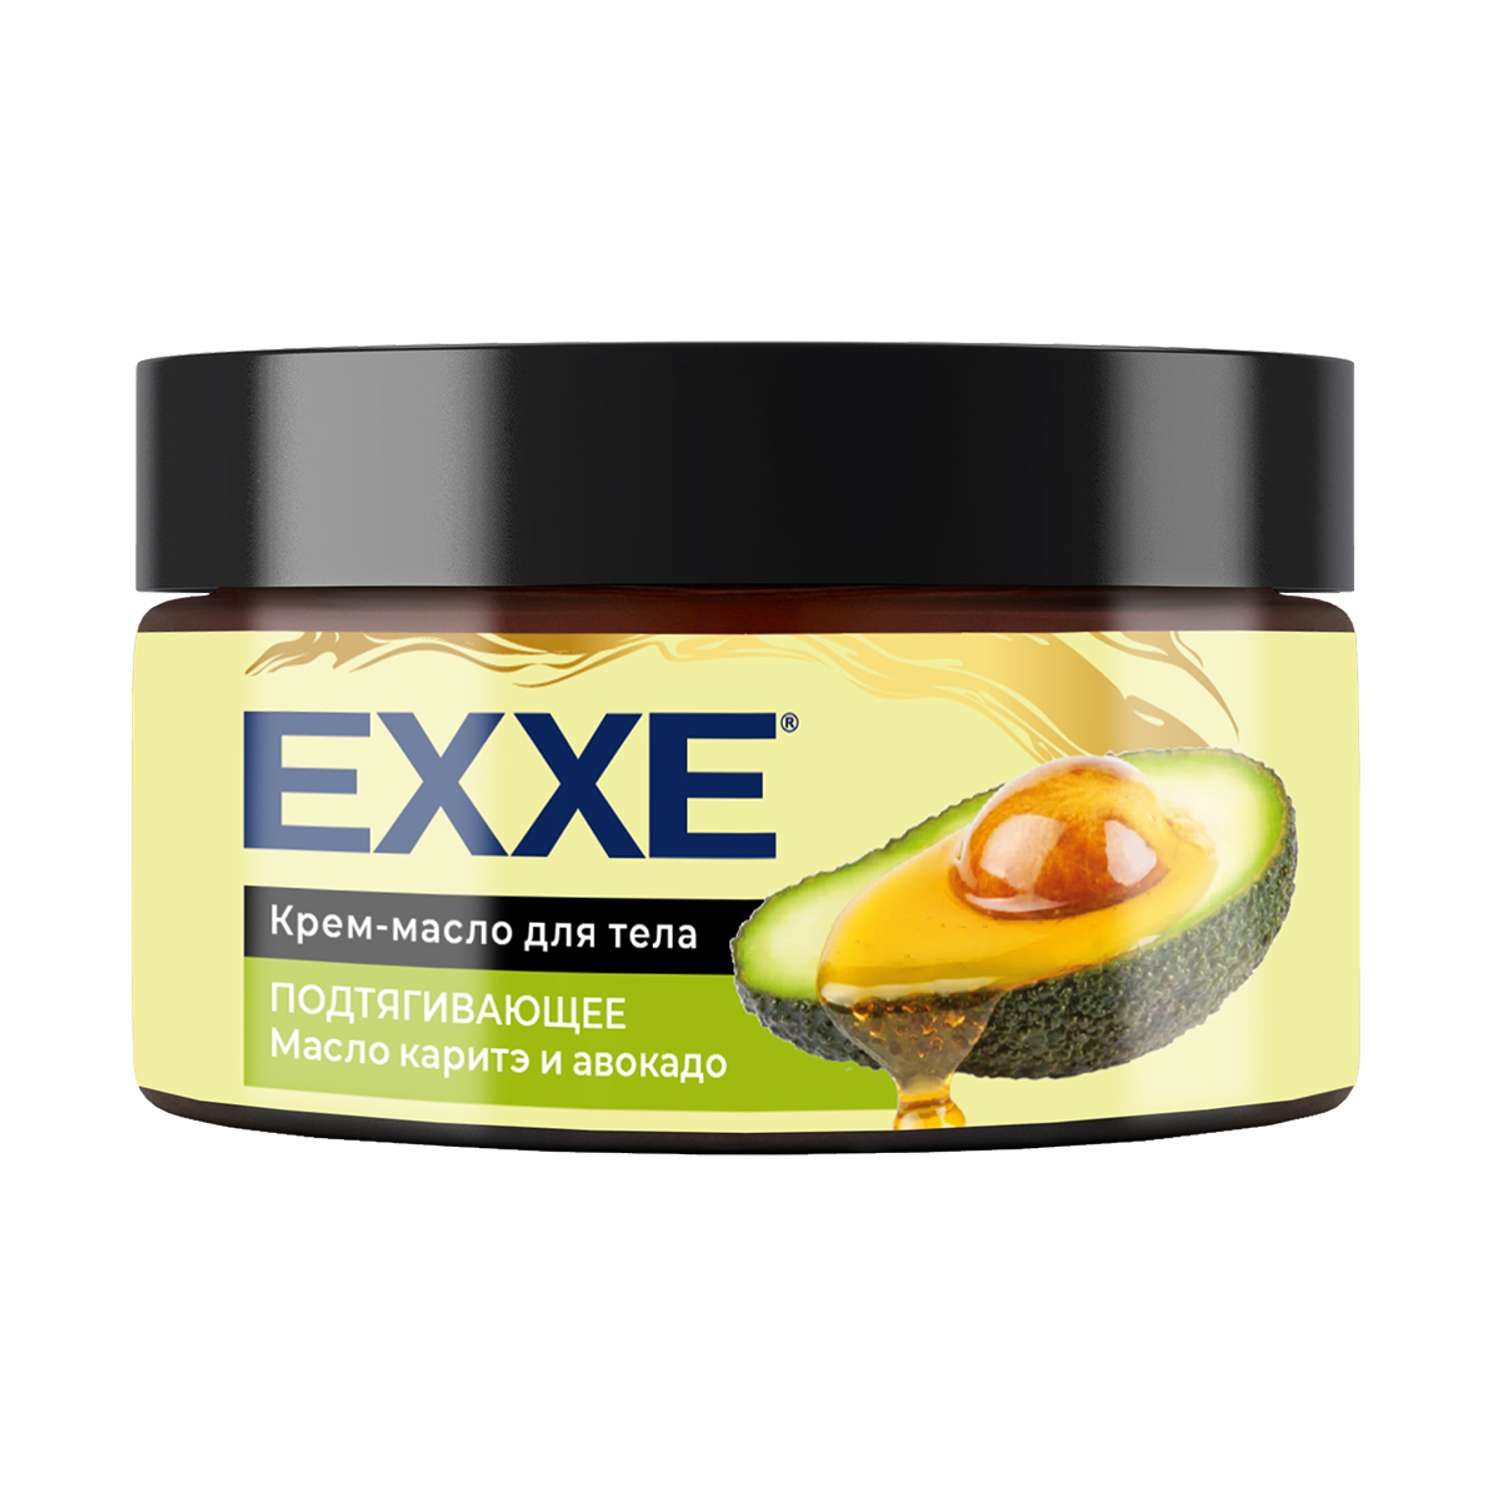 Крем-масло для тела EXXE Каритэ и авокадо подтягивающее 250 мл - фото 1